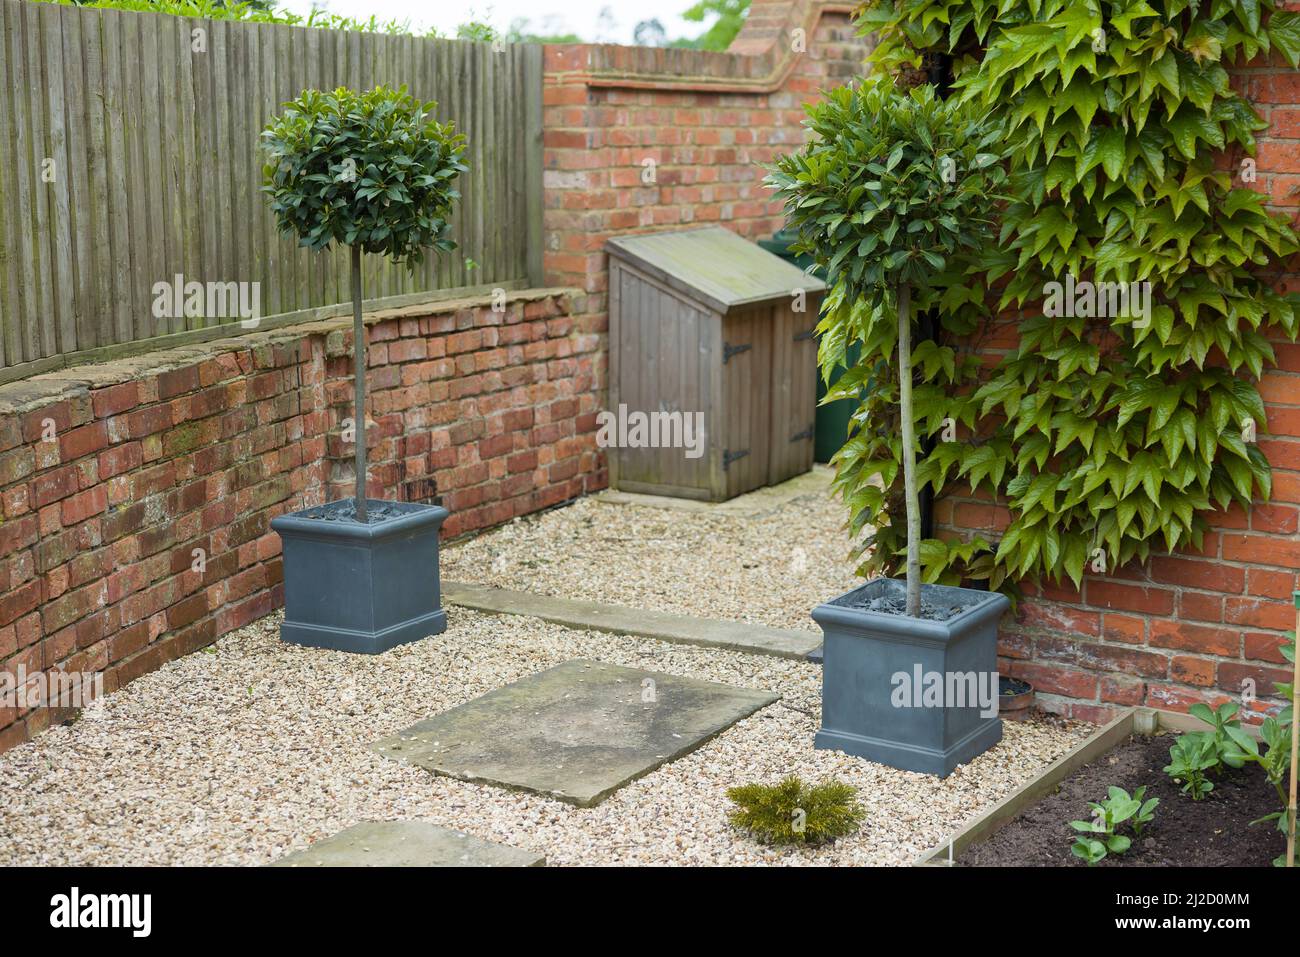 Standard-Lorbeerbäume in Containern am Eingang zu einem Durchgang oder engen Garten. Landschaftlich gestalteter Garten in Großbritannien. Stockfoto